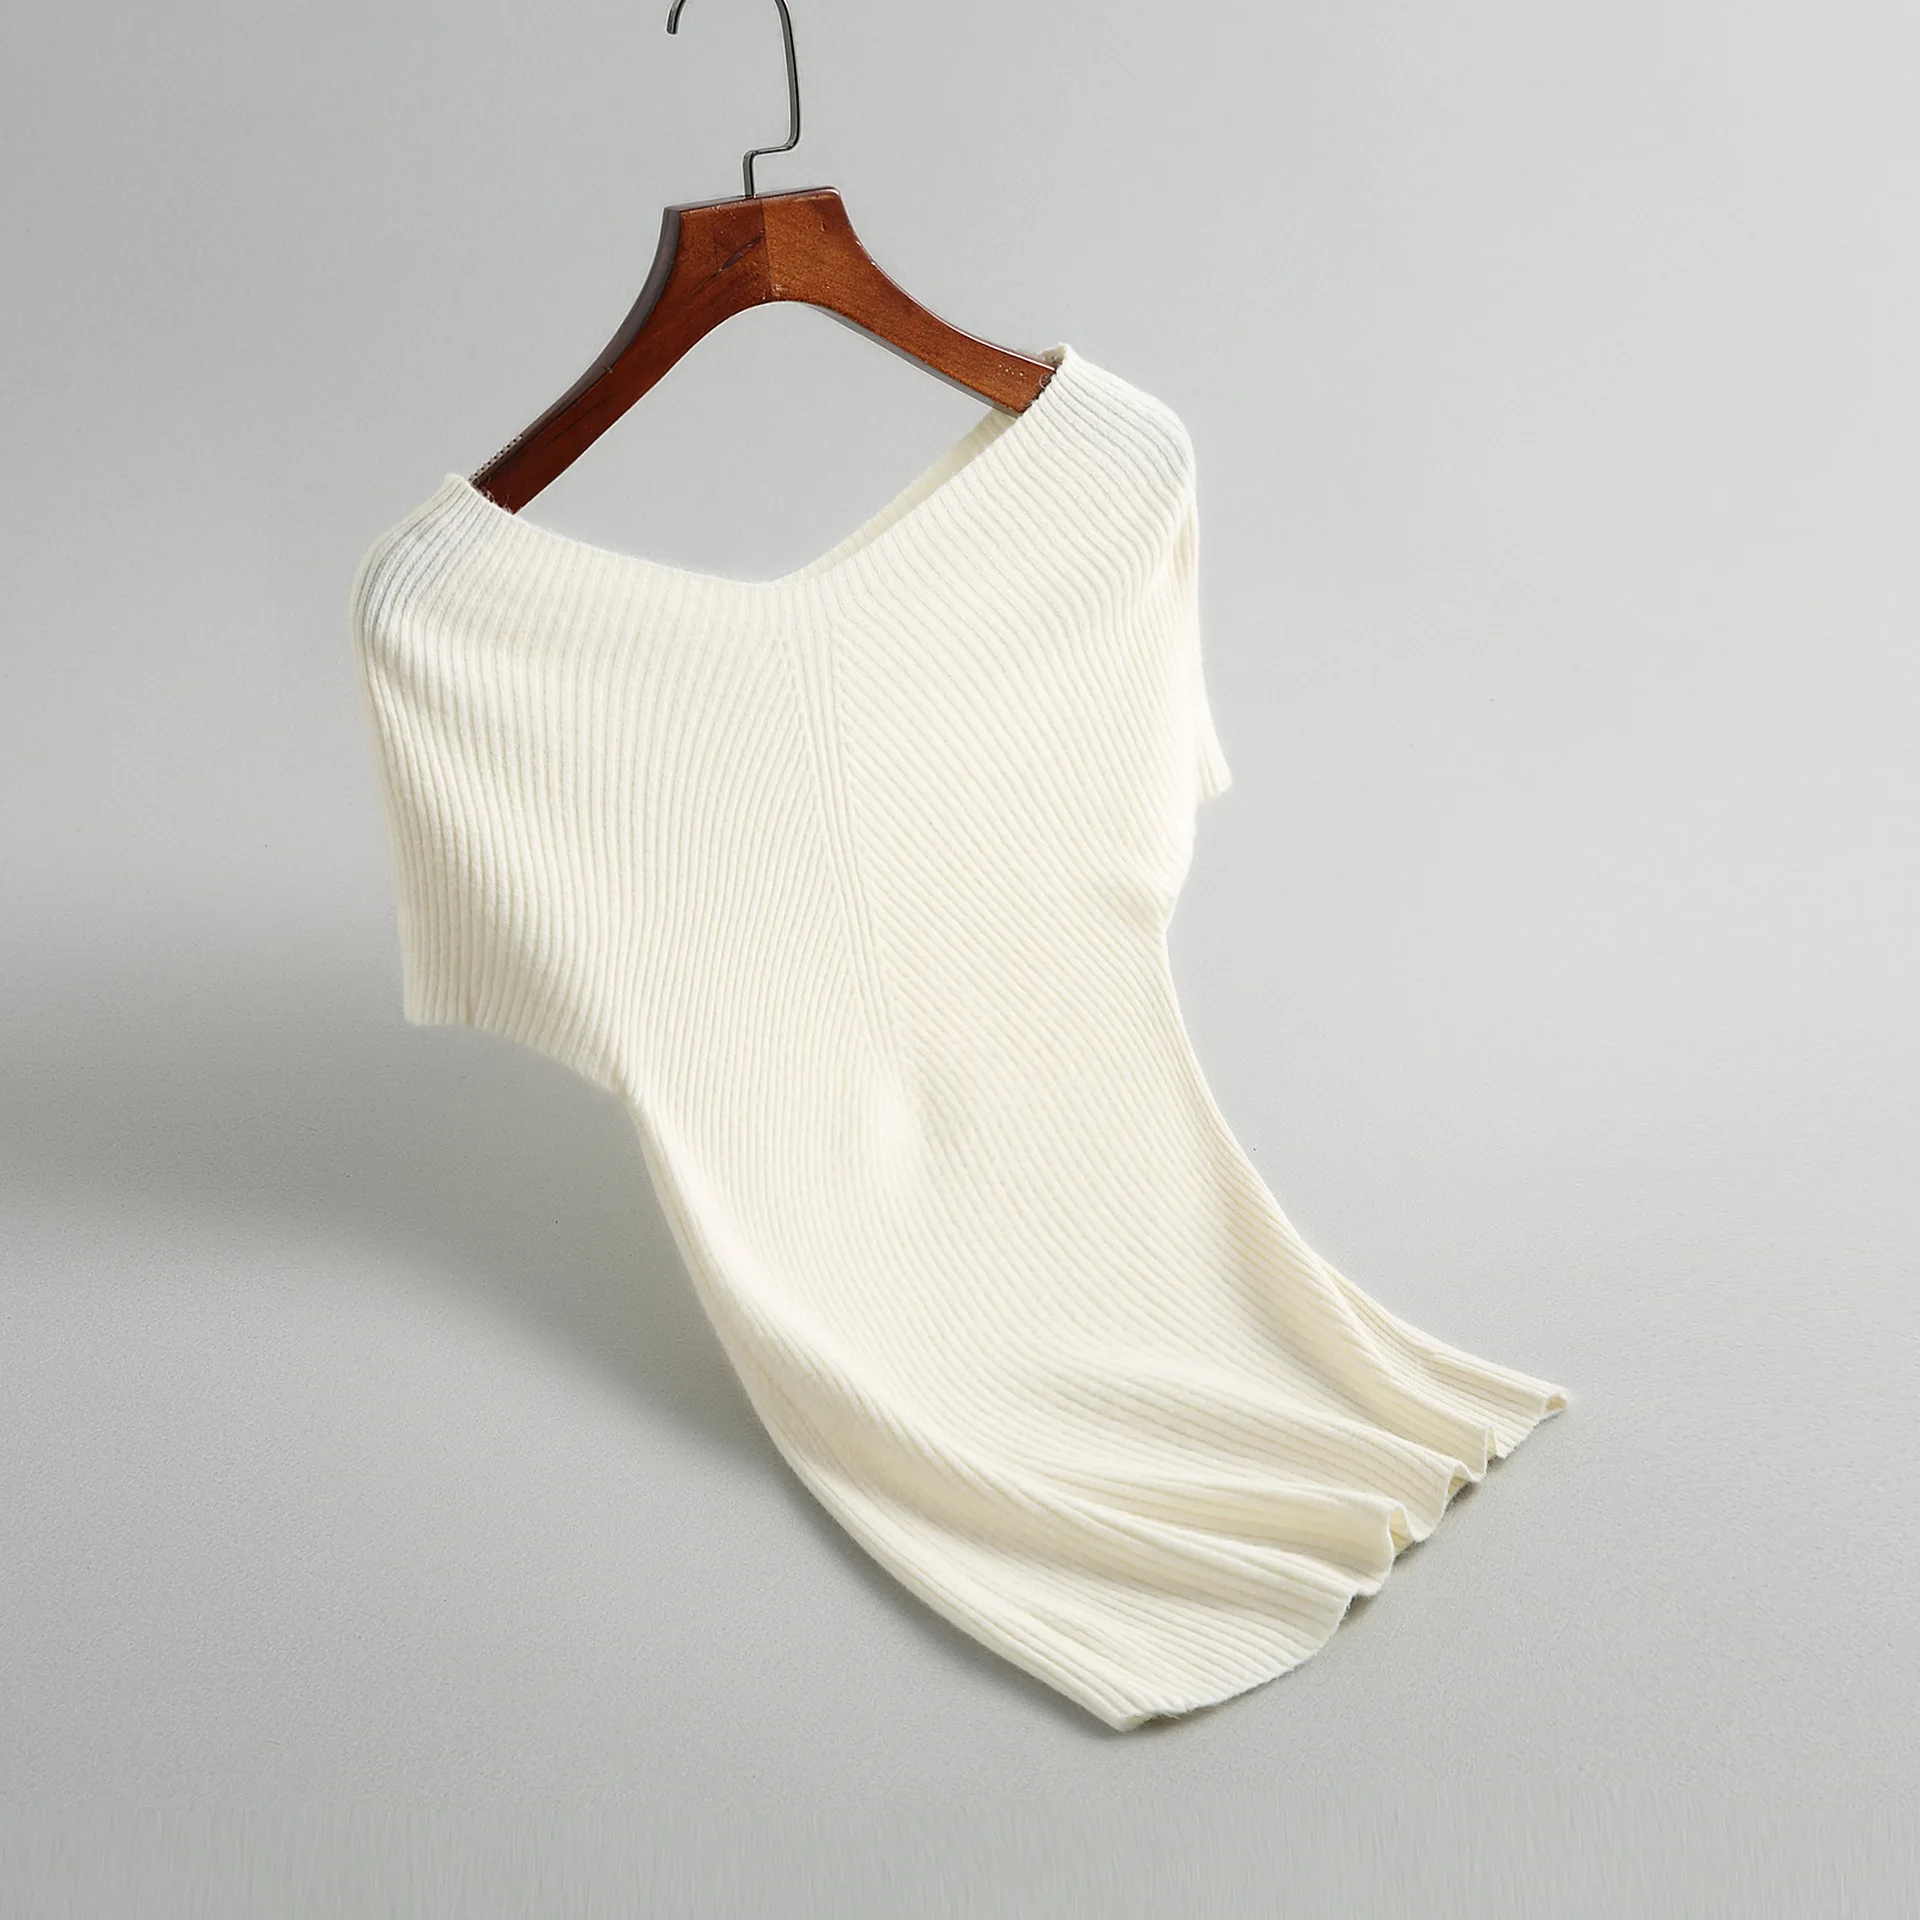 INNASOFAN свитер женский Лето-осень тонкий вязаный свитер европейская-американская мода элегантный свитер однотонный с v-образным воротником